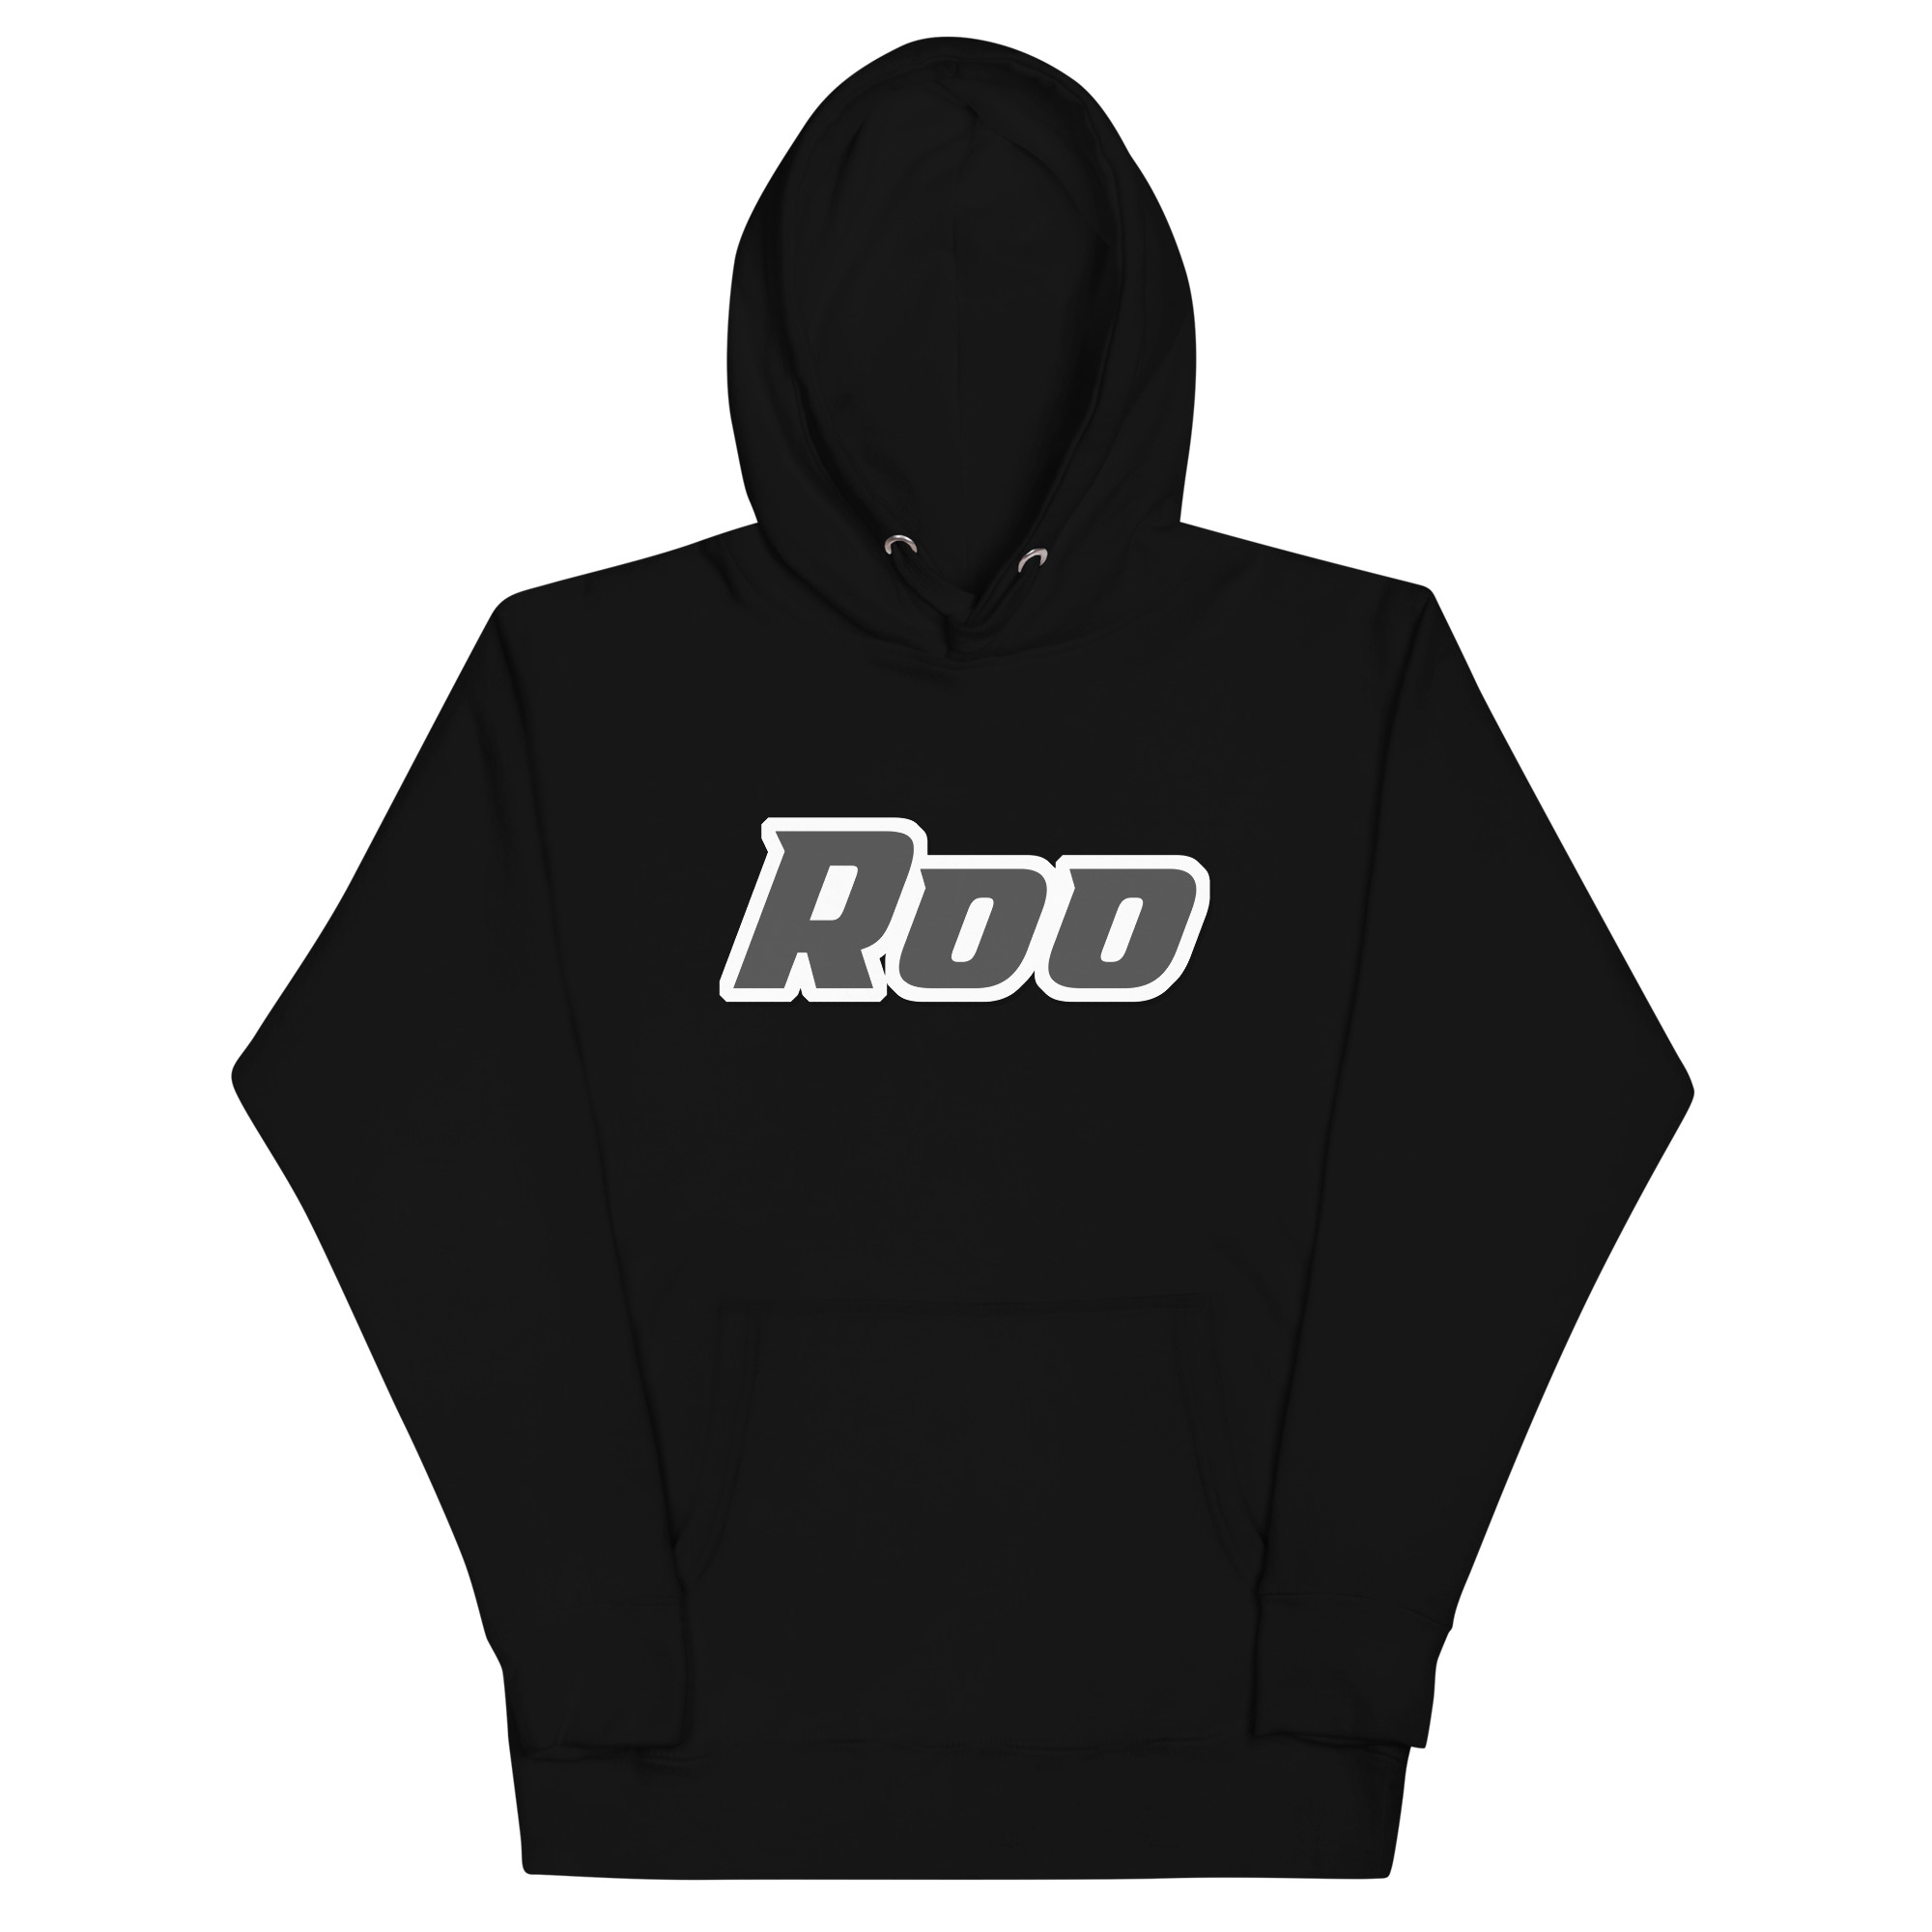 unisex-premium-hoodie-black-front-65259940859d4.jpg